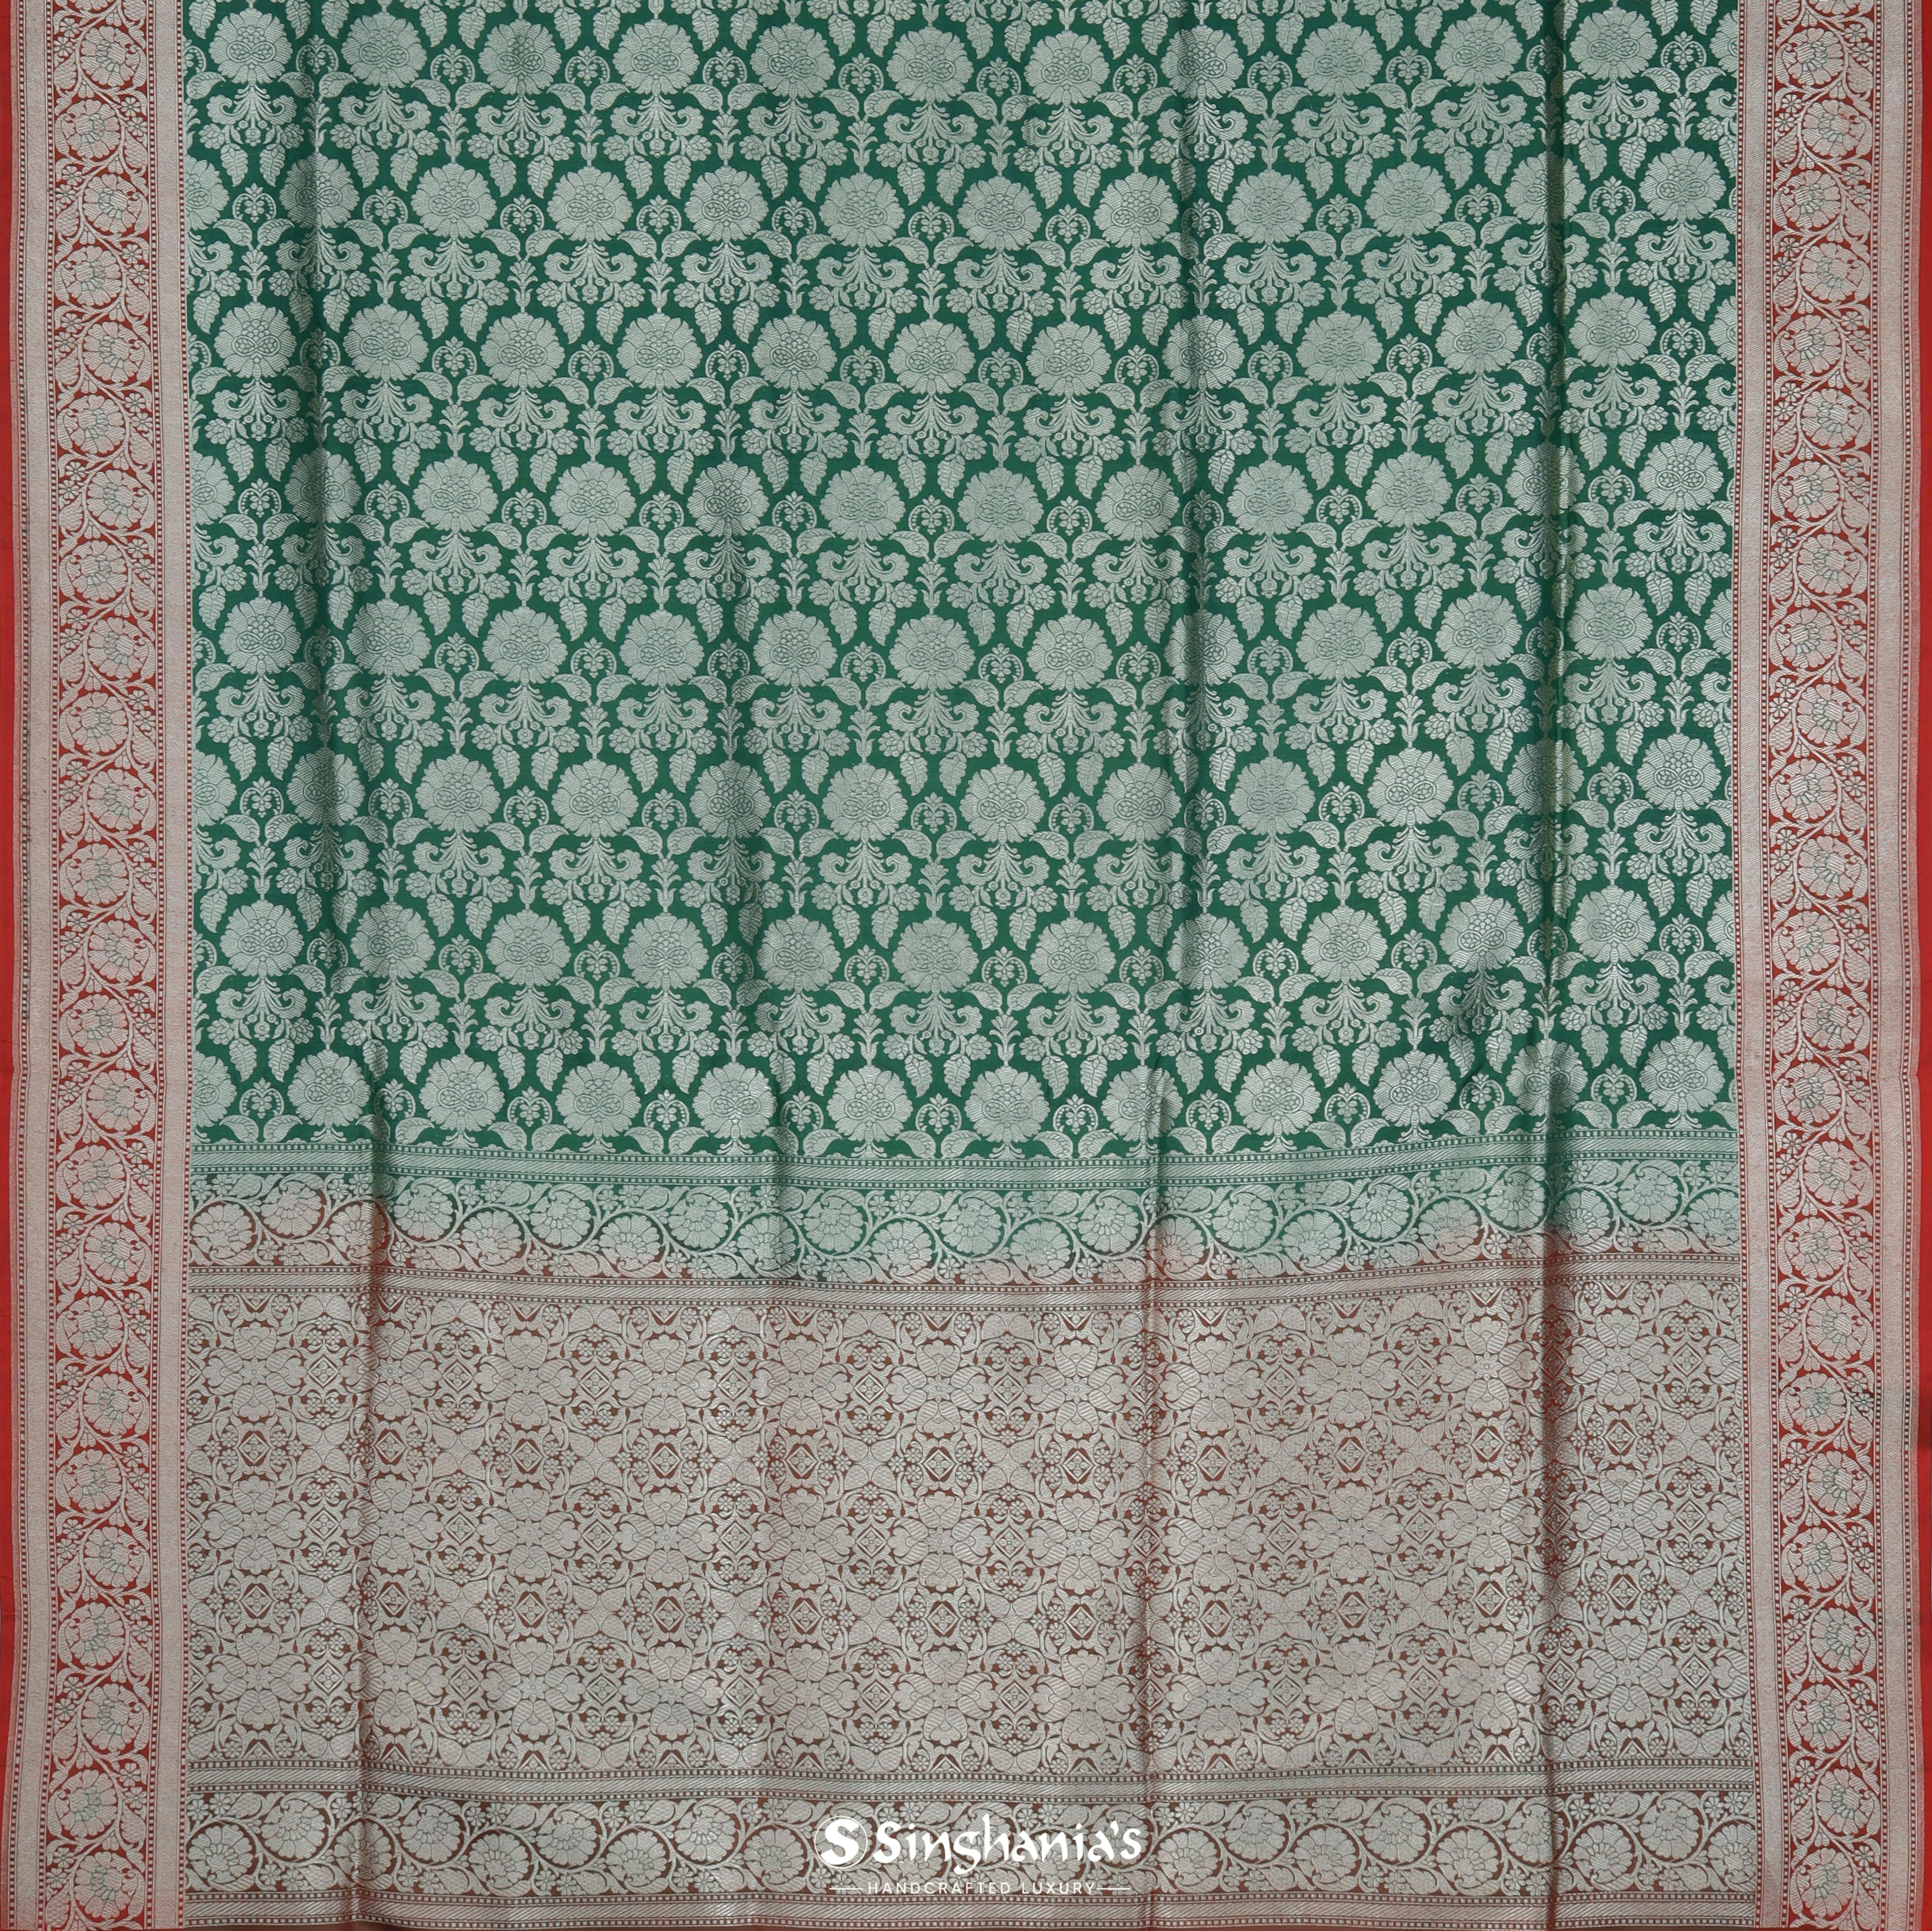 Hunter Green Banarasi Silk Saree With Floral Motifs